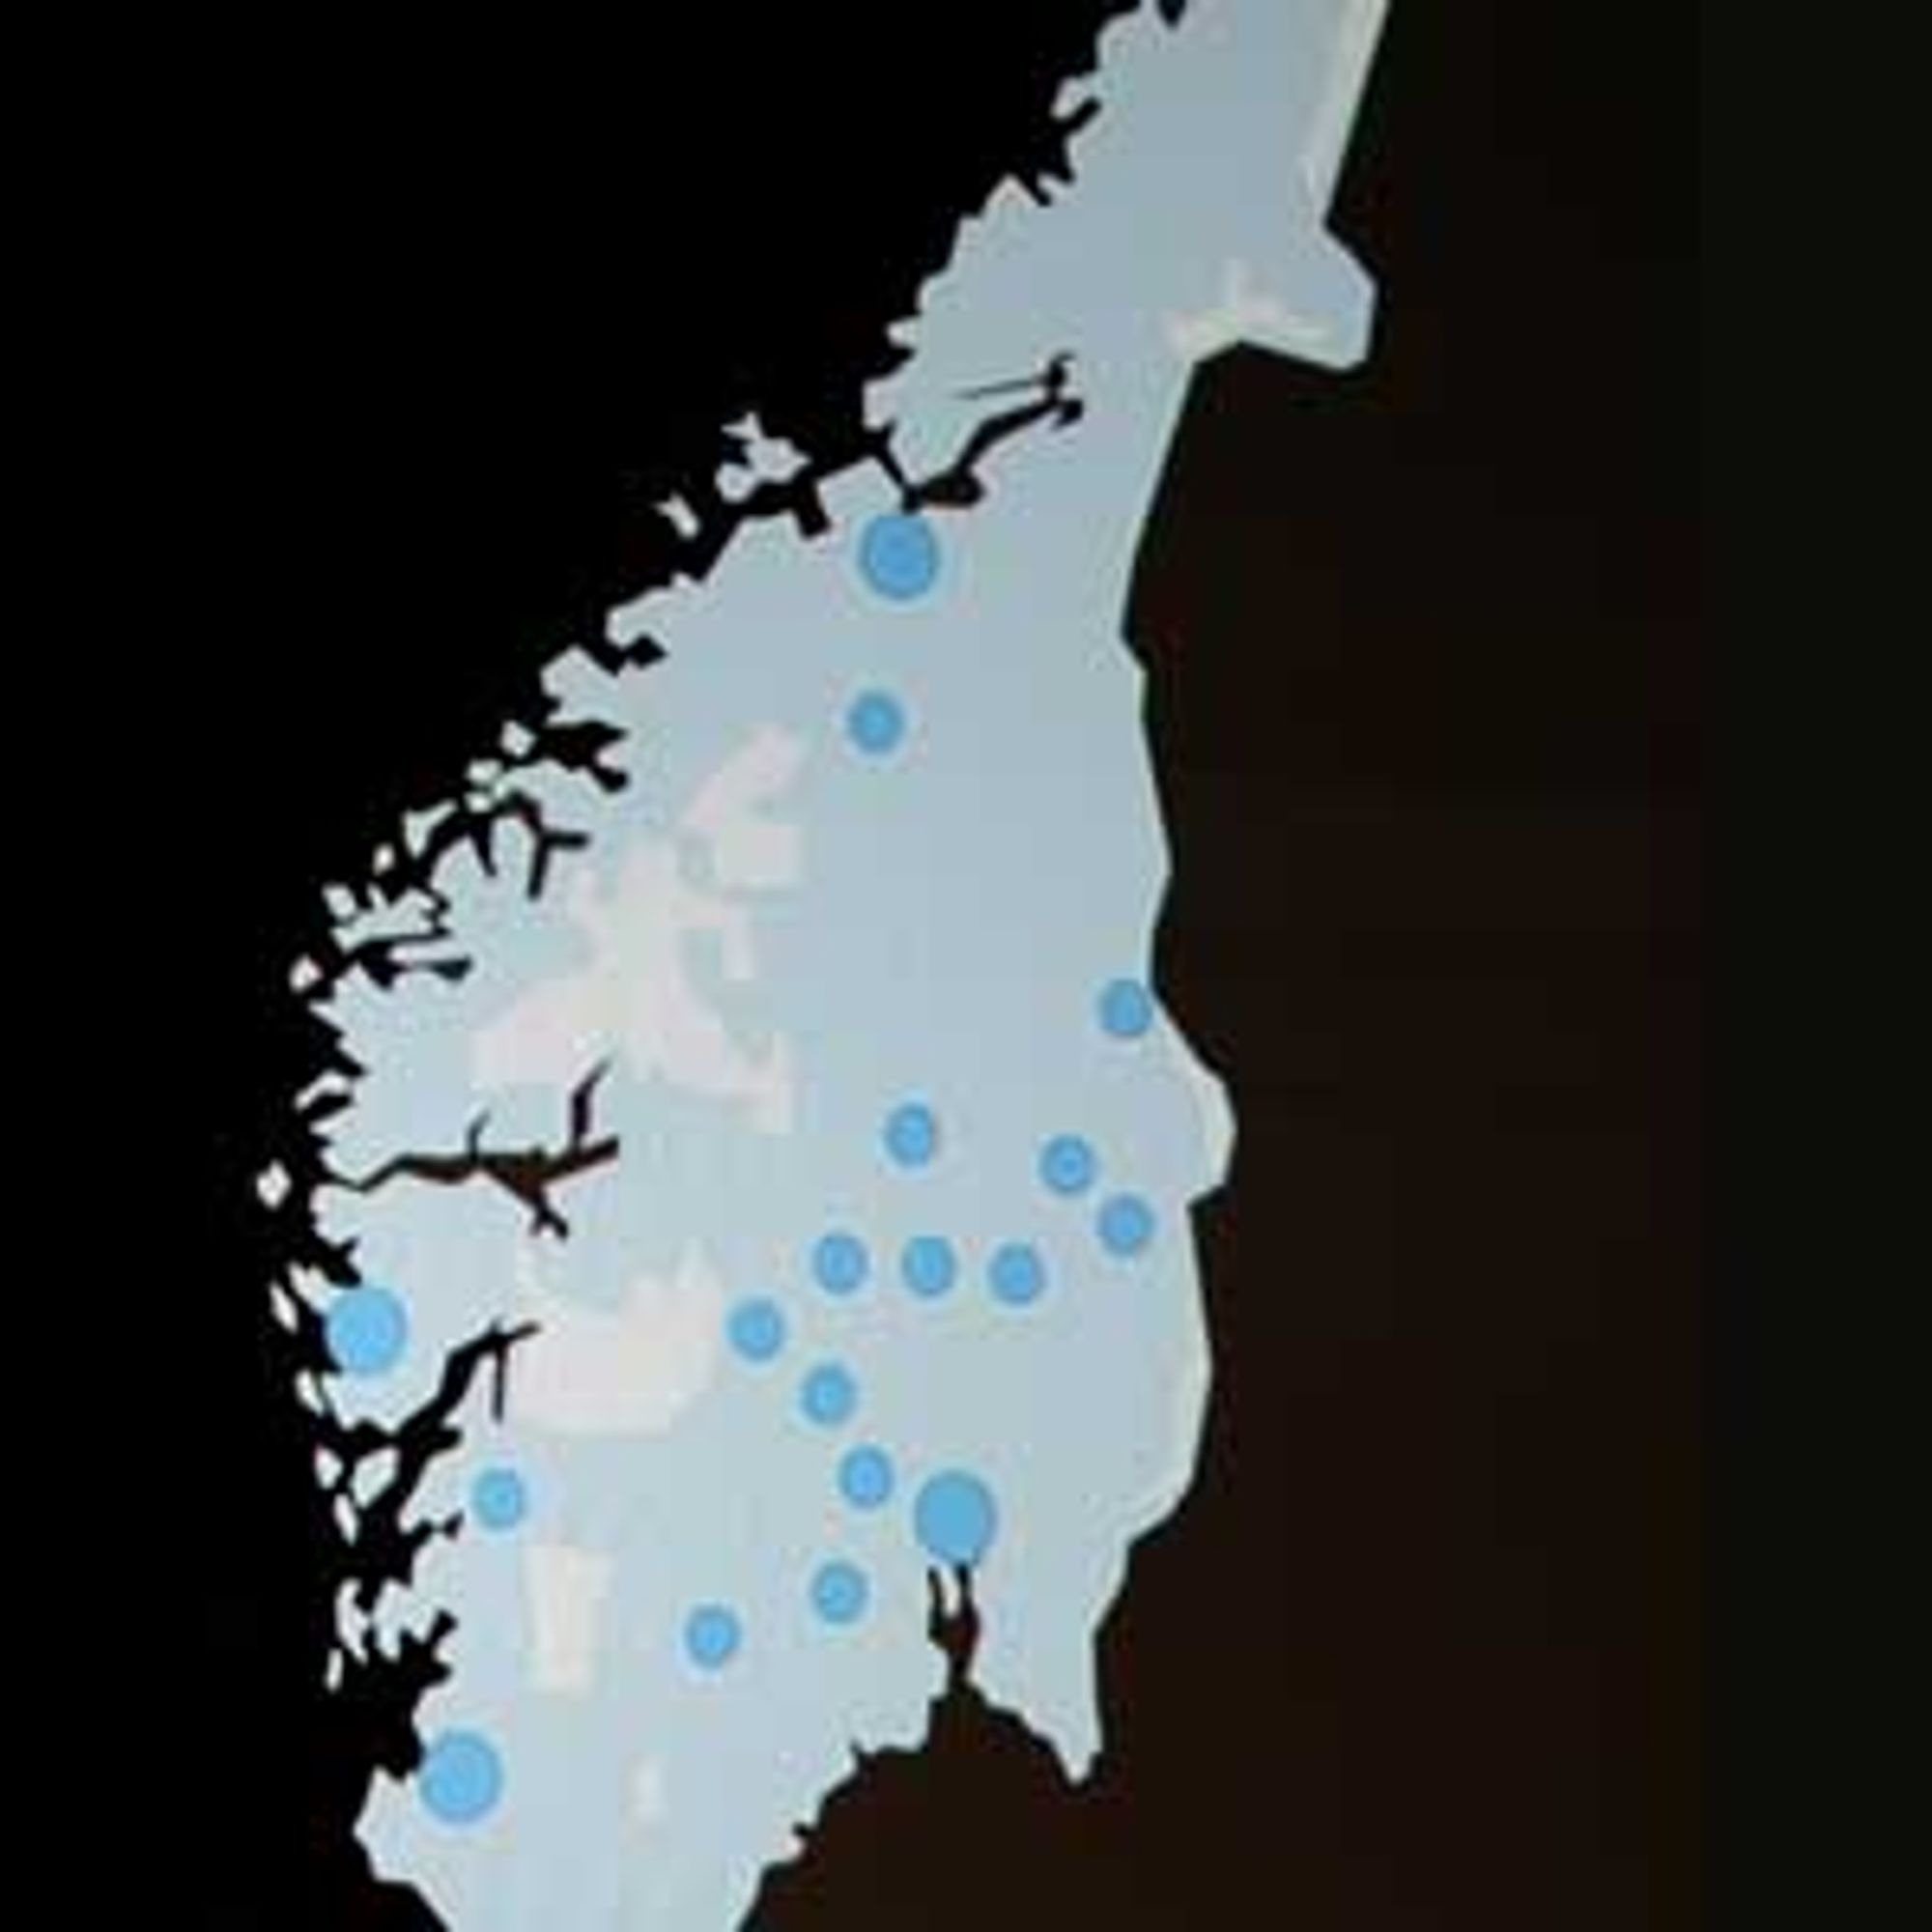 Telenor-kartet stopper ved Trondheim